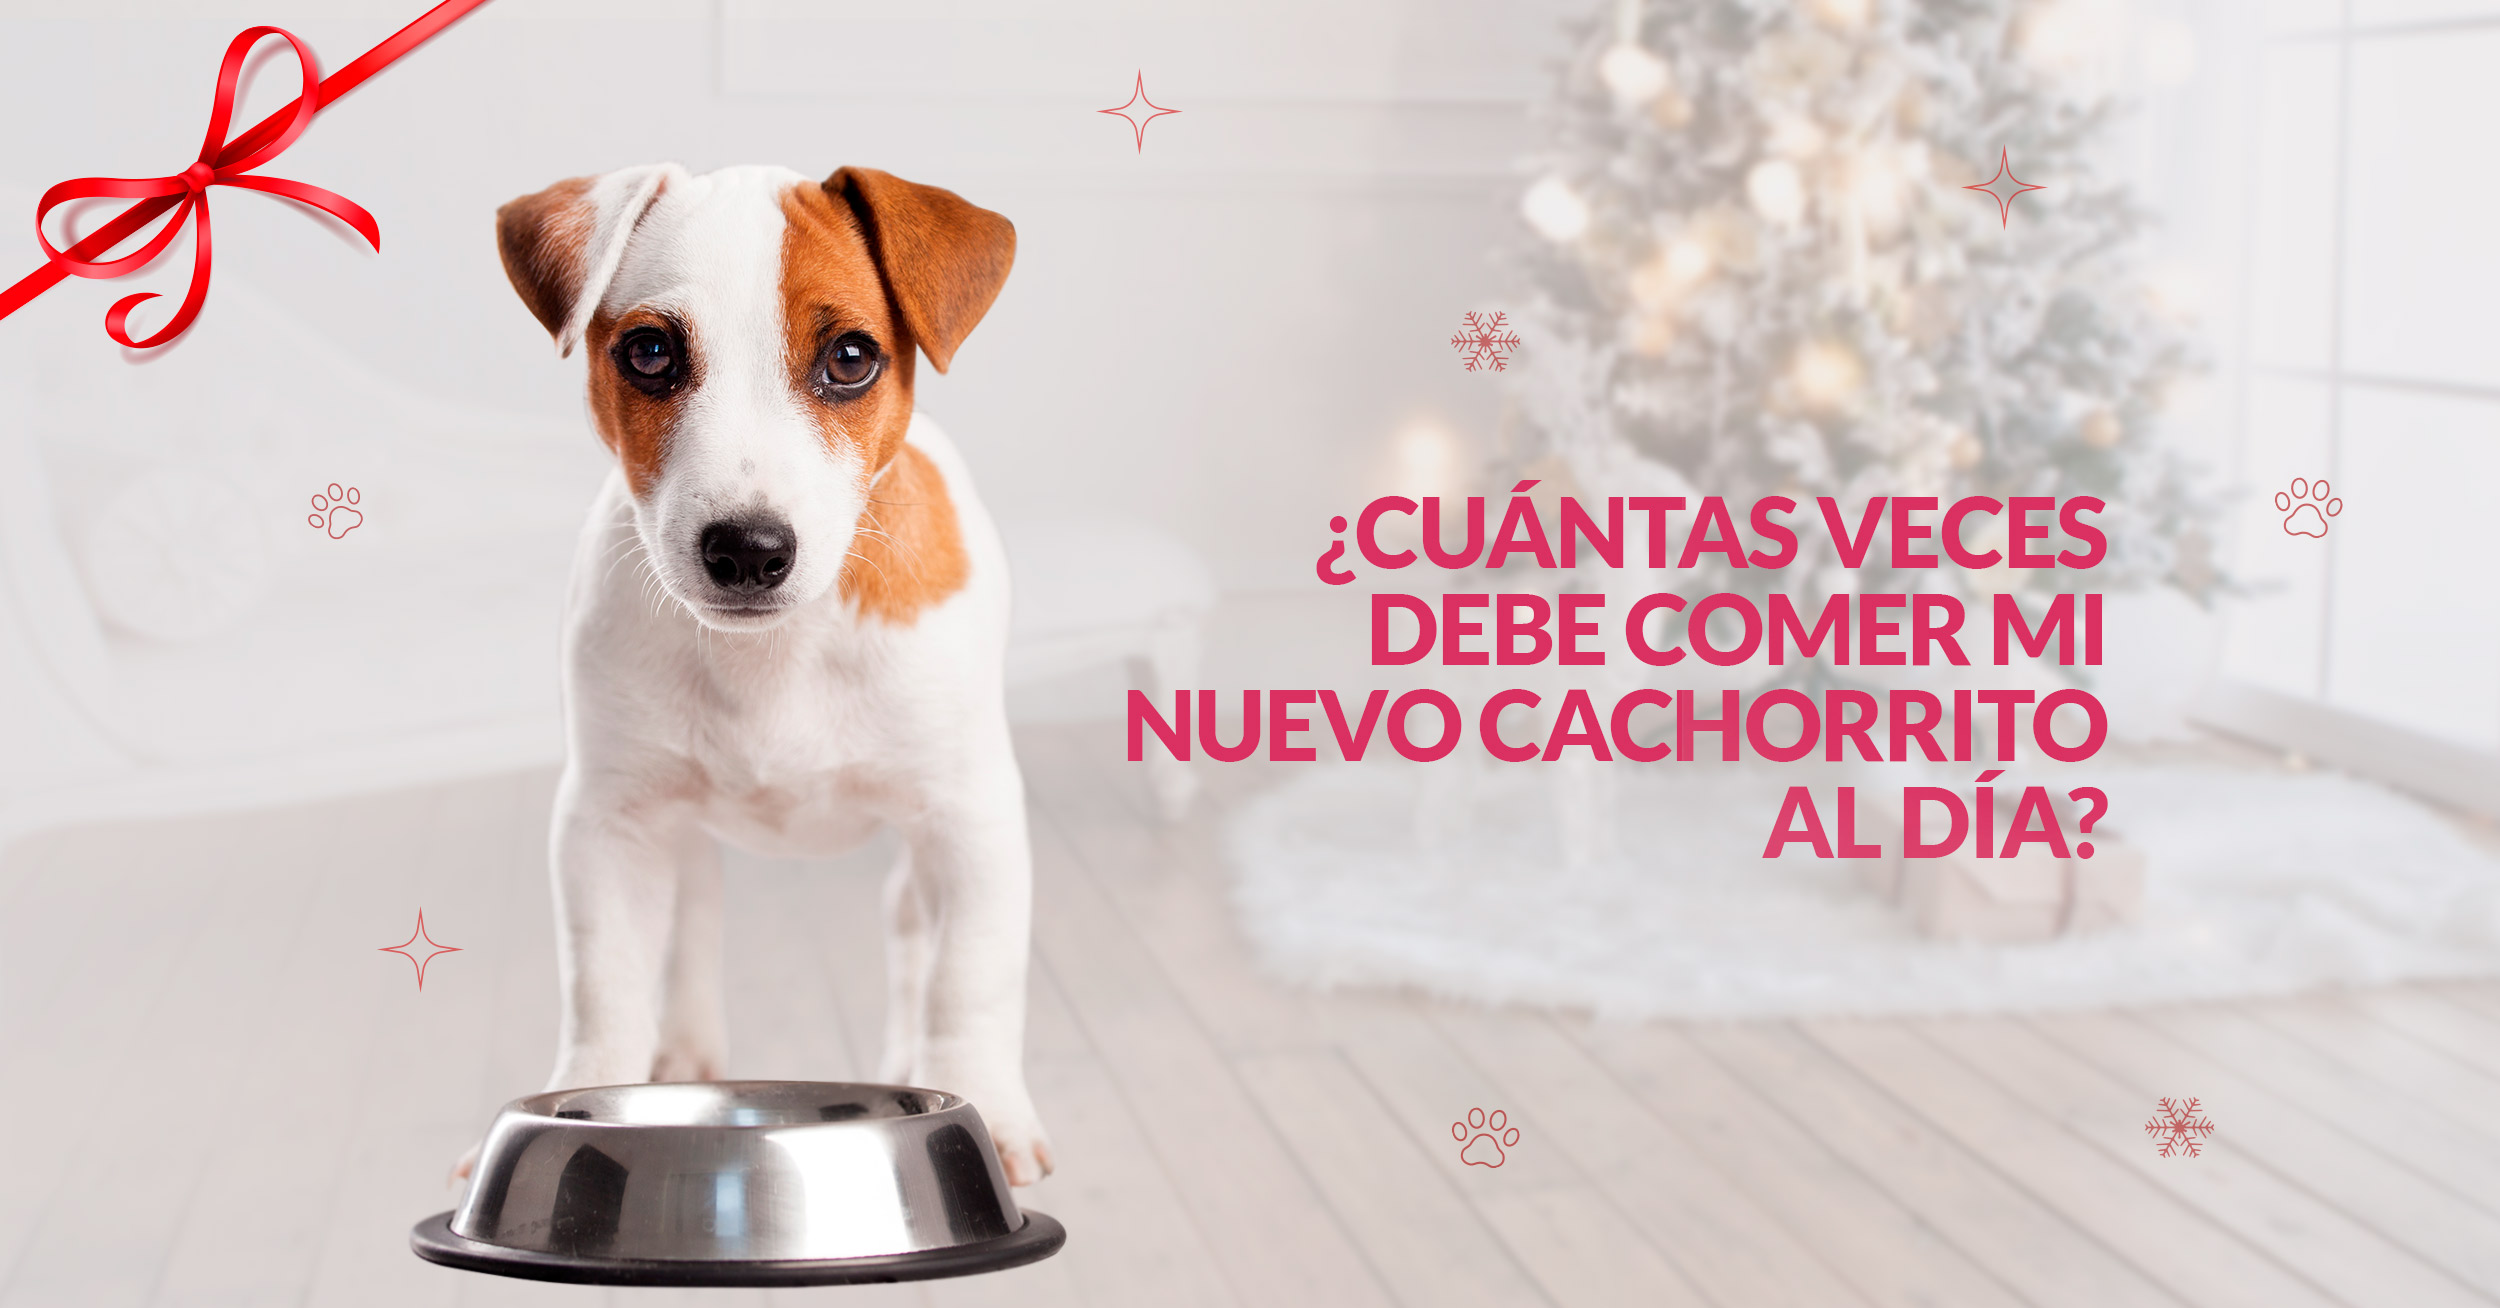 Explosivos Patético Nominación Cuántas veces debe comer mi nuevo cachorrito al día? - Mascota Club del Perú